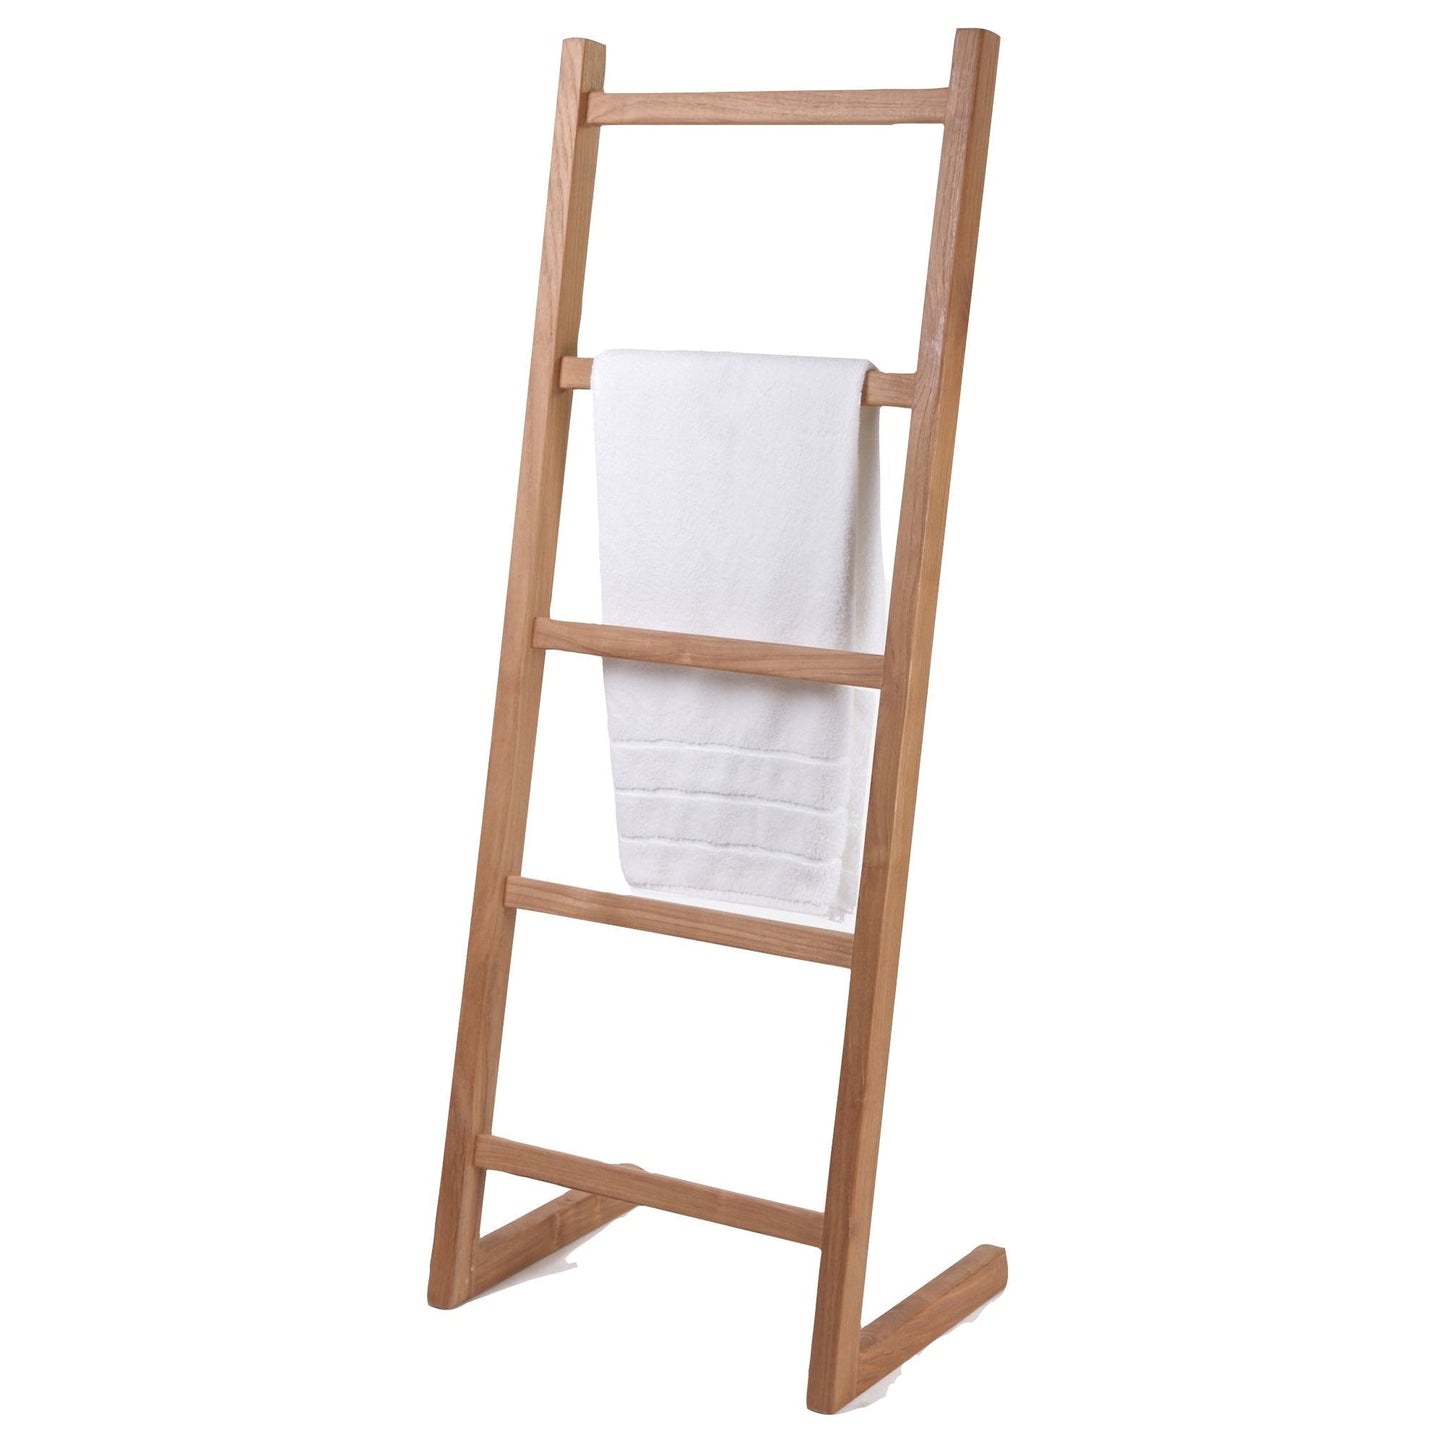 ARB Teak & Specialties 59" Solid Teak Wood Self-Standing Towel Ladder With 5 Bars